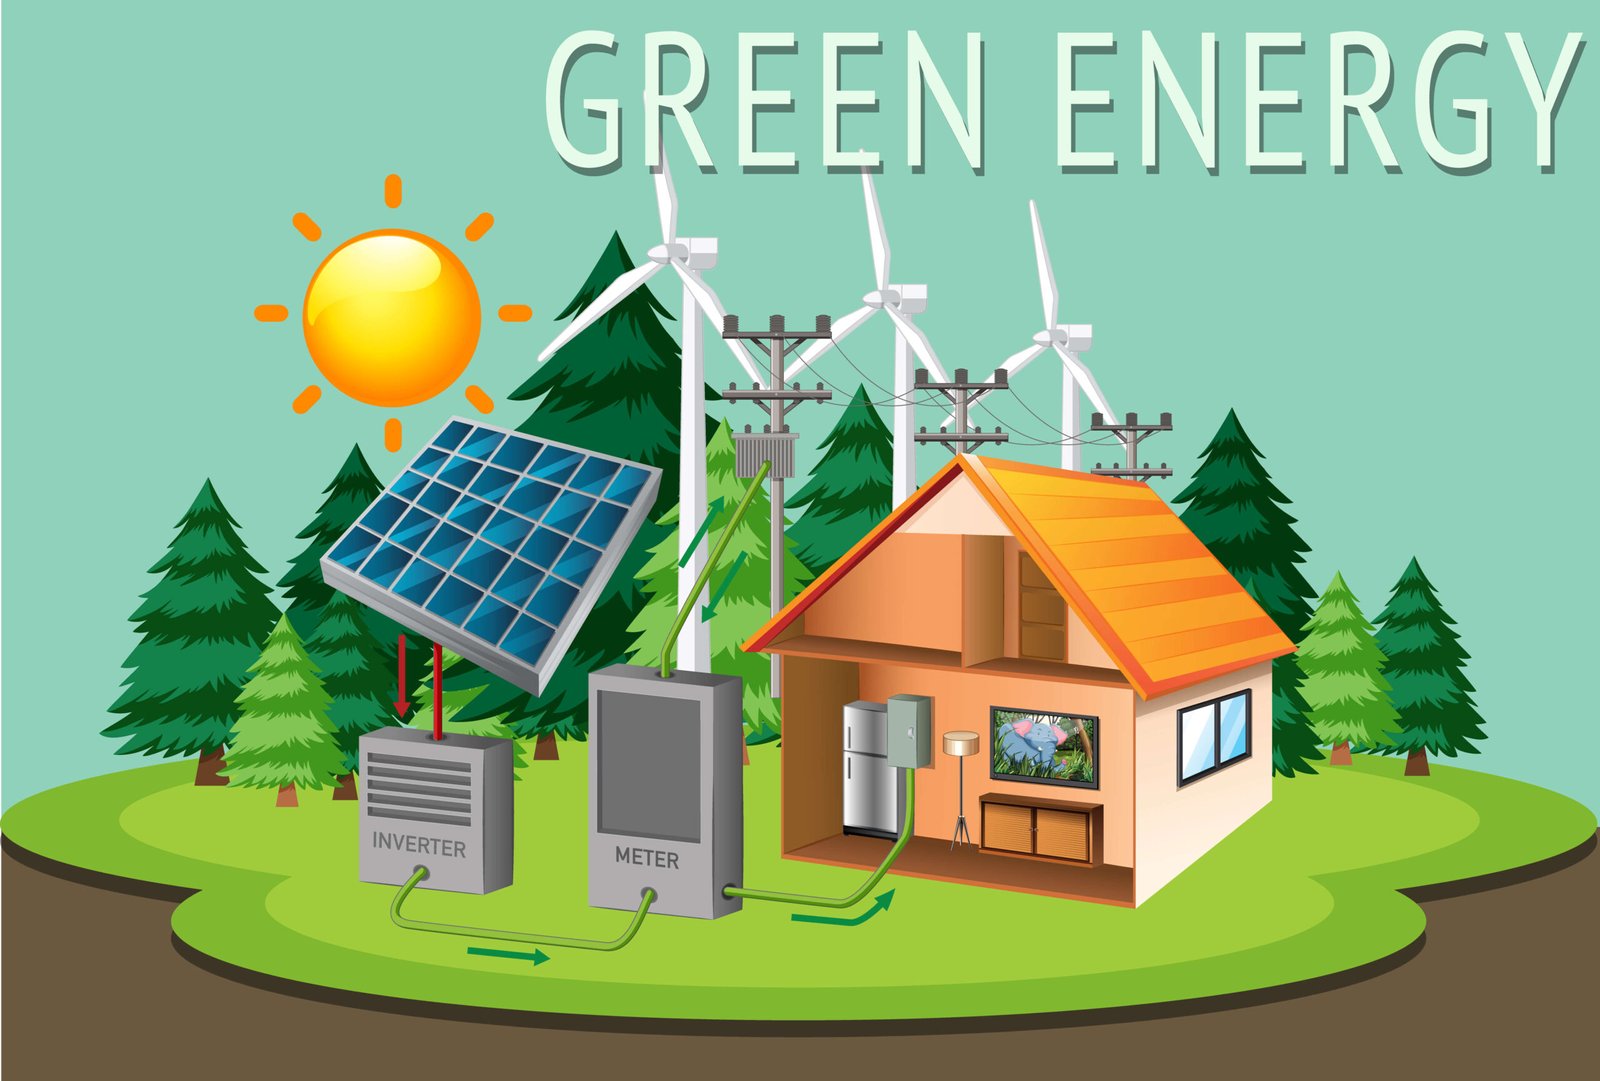 Understanding green energy